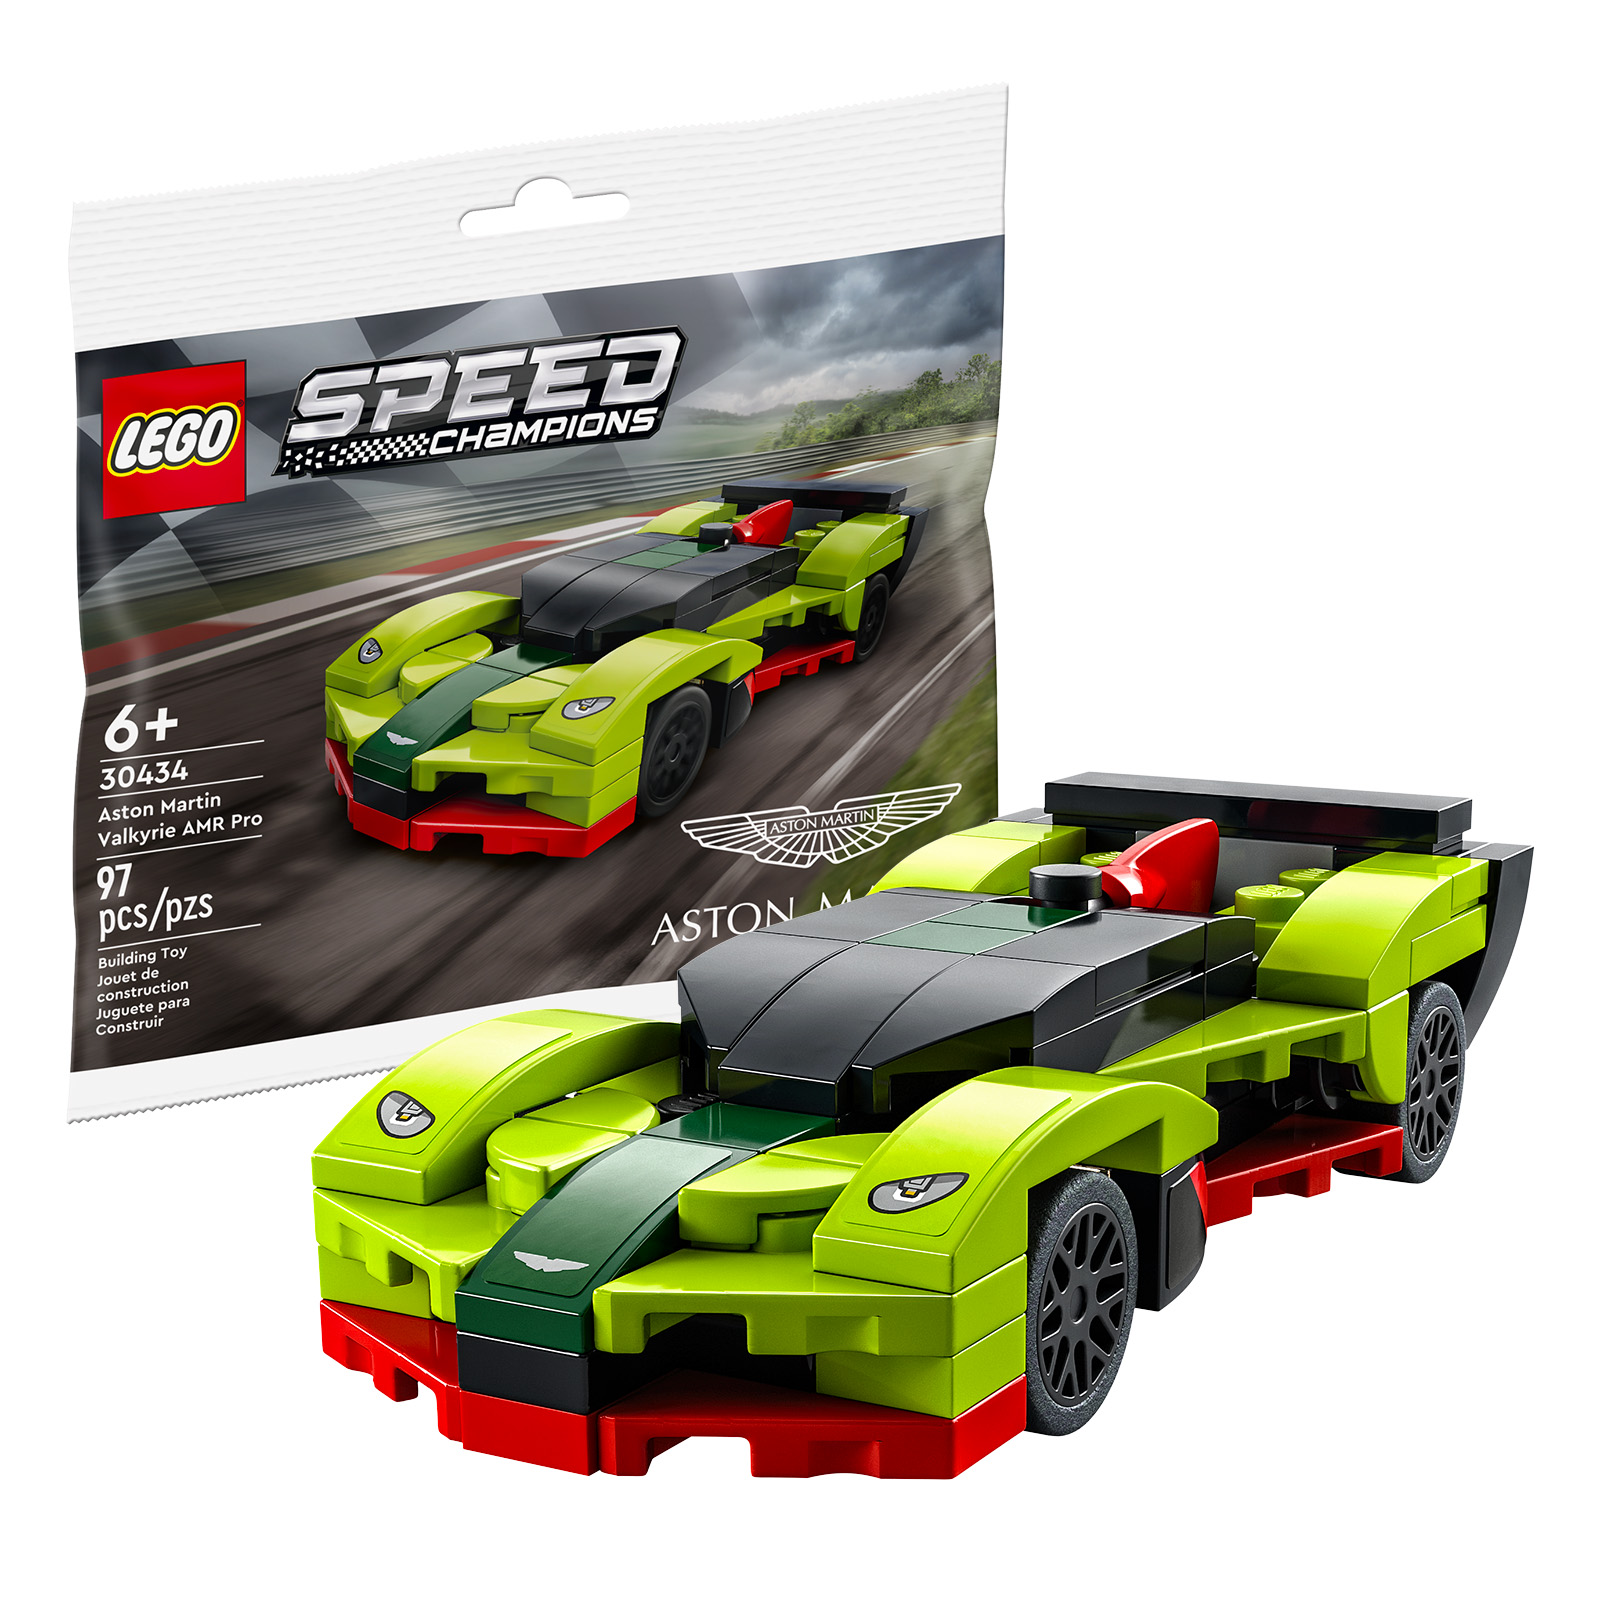 W sklepie LEGO: LEGO Speed ​​Champions 30434 Aston Martin Valkyrie AMR Pro torebka jest darmowa przy zakupach powyżej 40 €